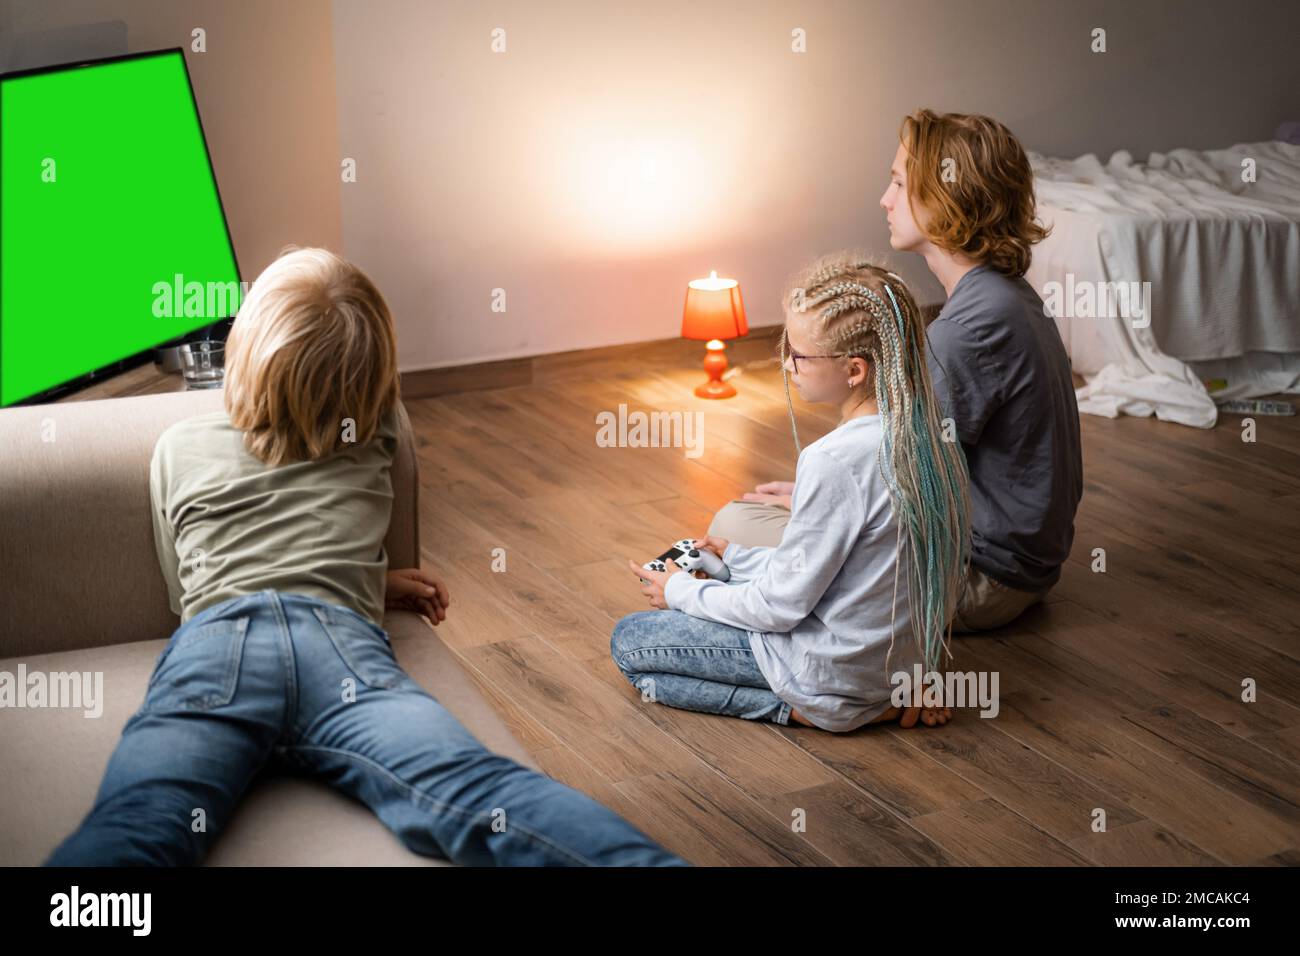 Trois enfants jouant au jeu vidéo Green Screen chromakey sur la console de télévision à l'aide de la manette tout en étant assis à la maison, frères et soeur assis sur le sol Banque D'Images